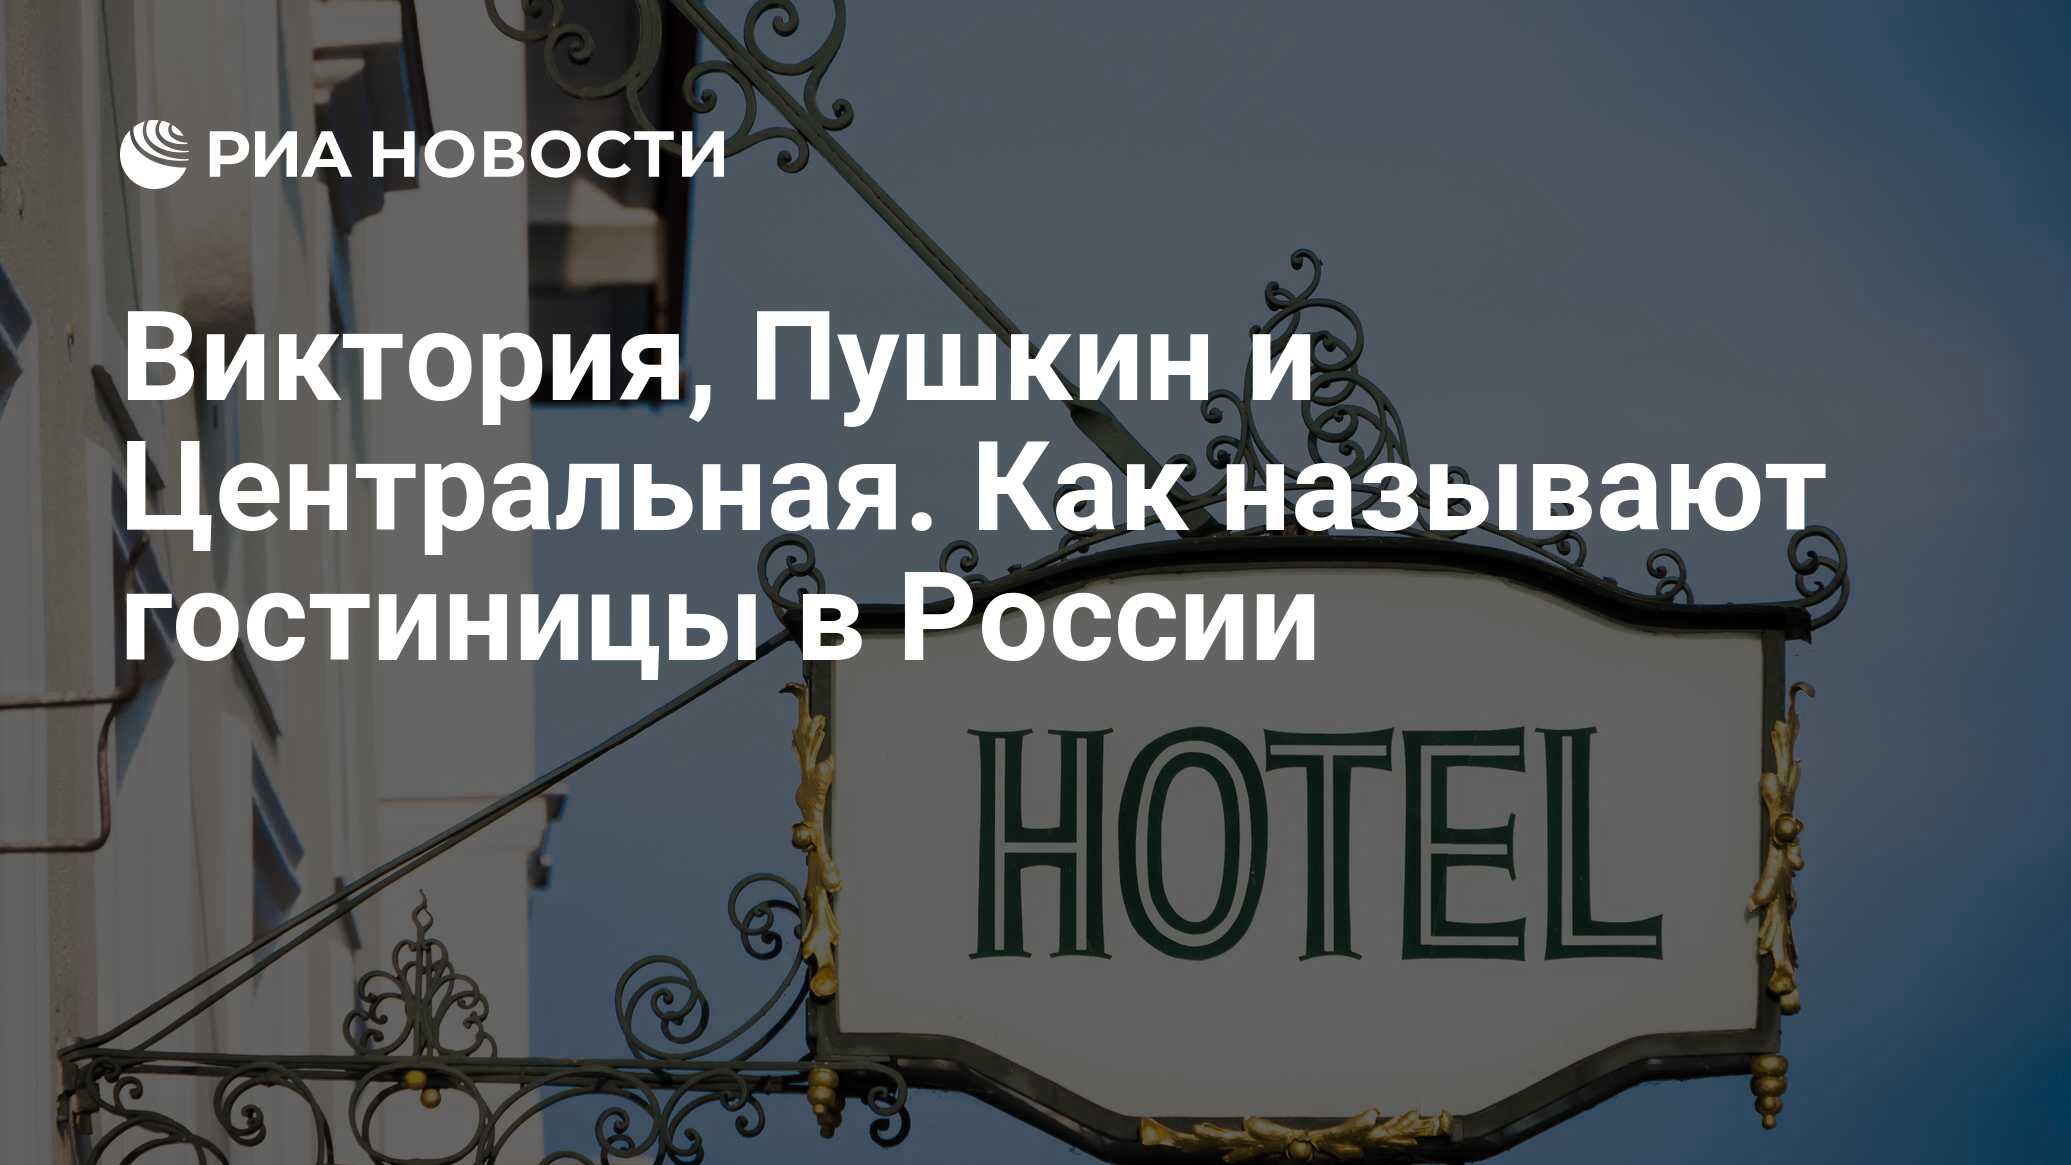 Звана гостиница. Как в России назывались отели название. Звана отель. Как называется отель рамка.